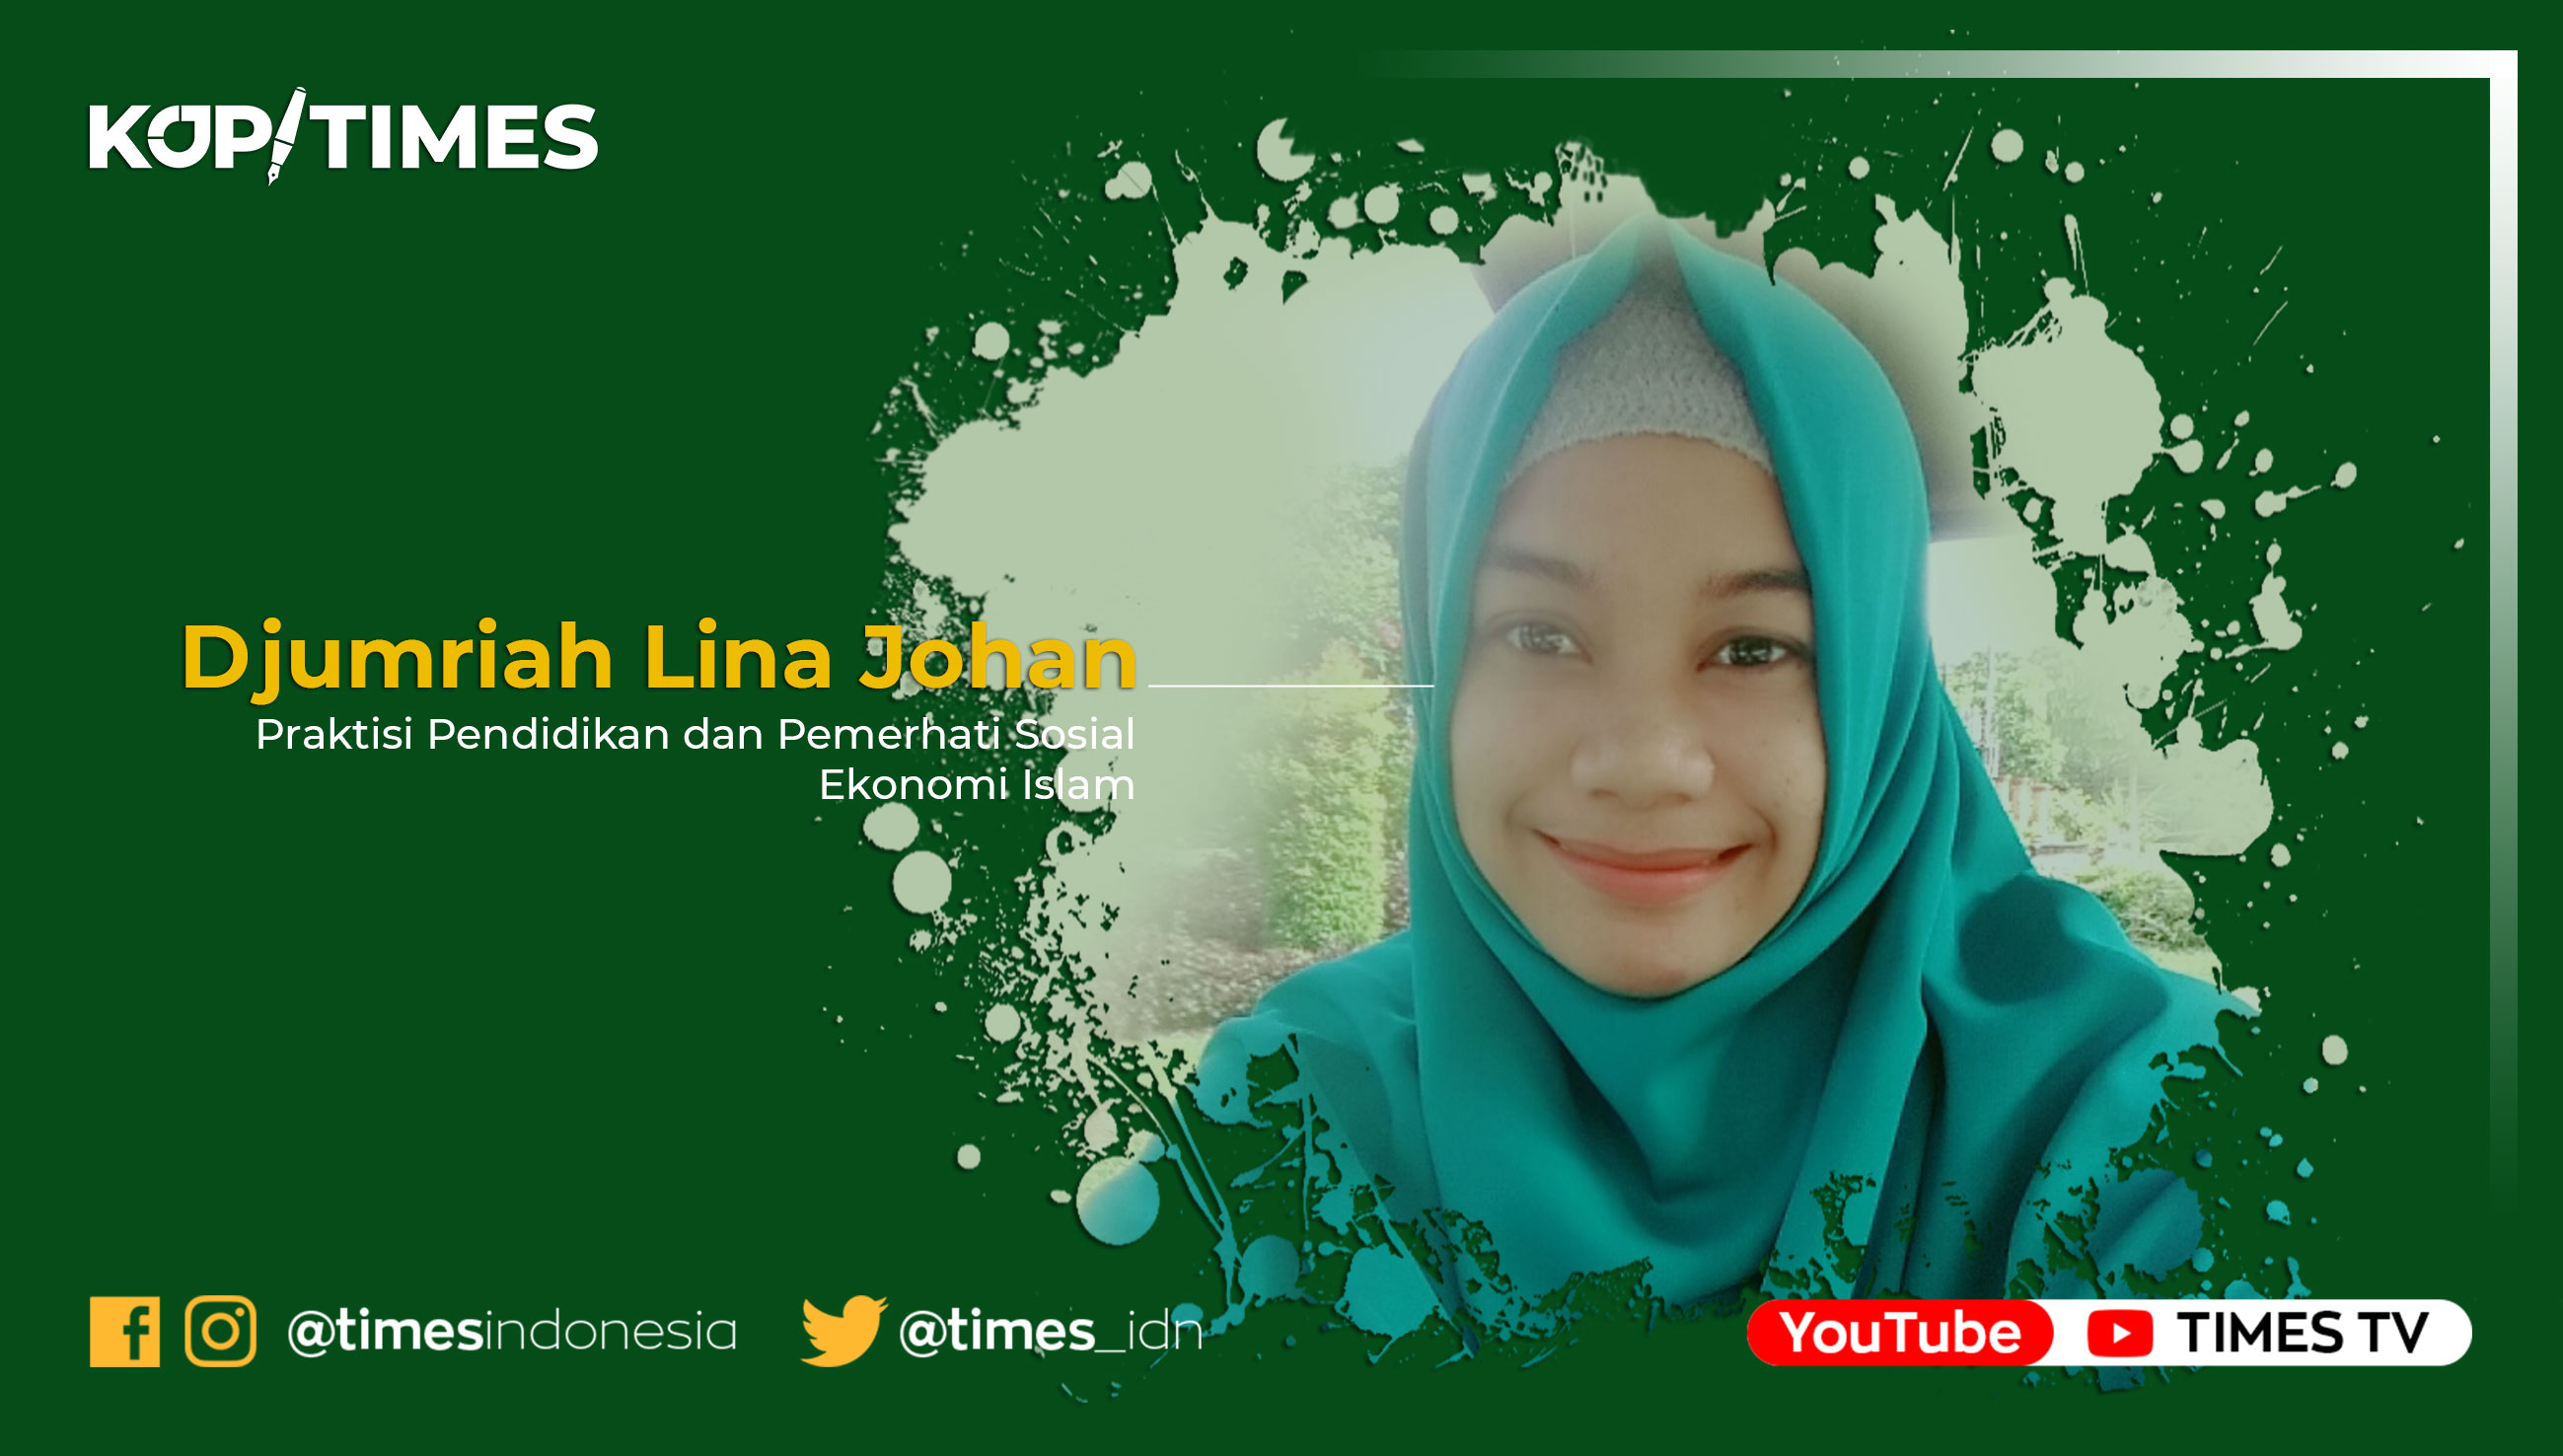 Djumriah Lina Johan, Praktisi Pendidikan dan Pemerhati Sosial Ekonomi Islam